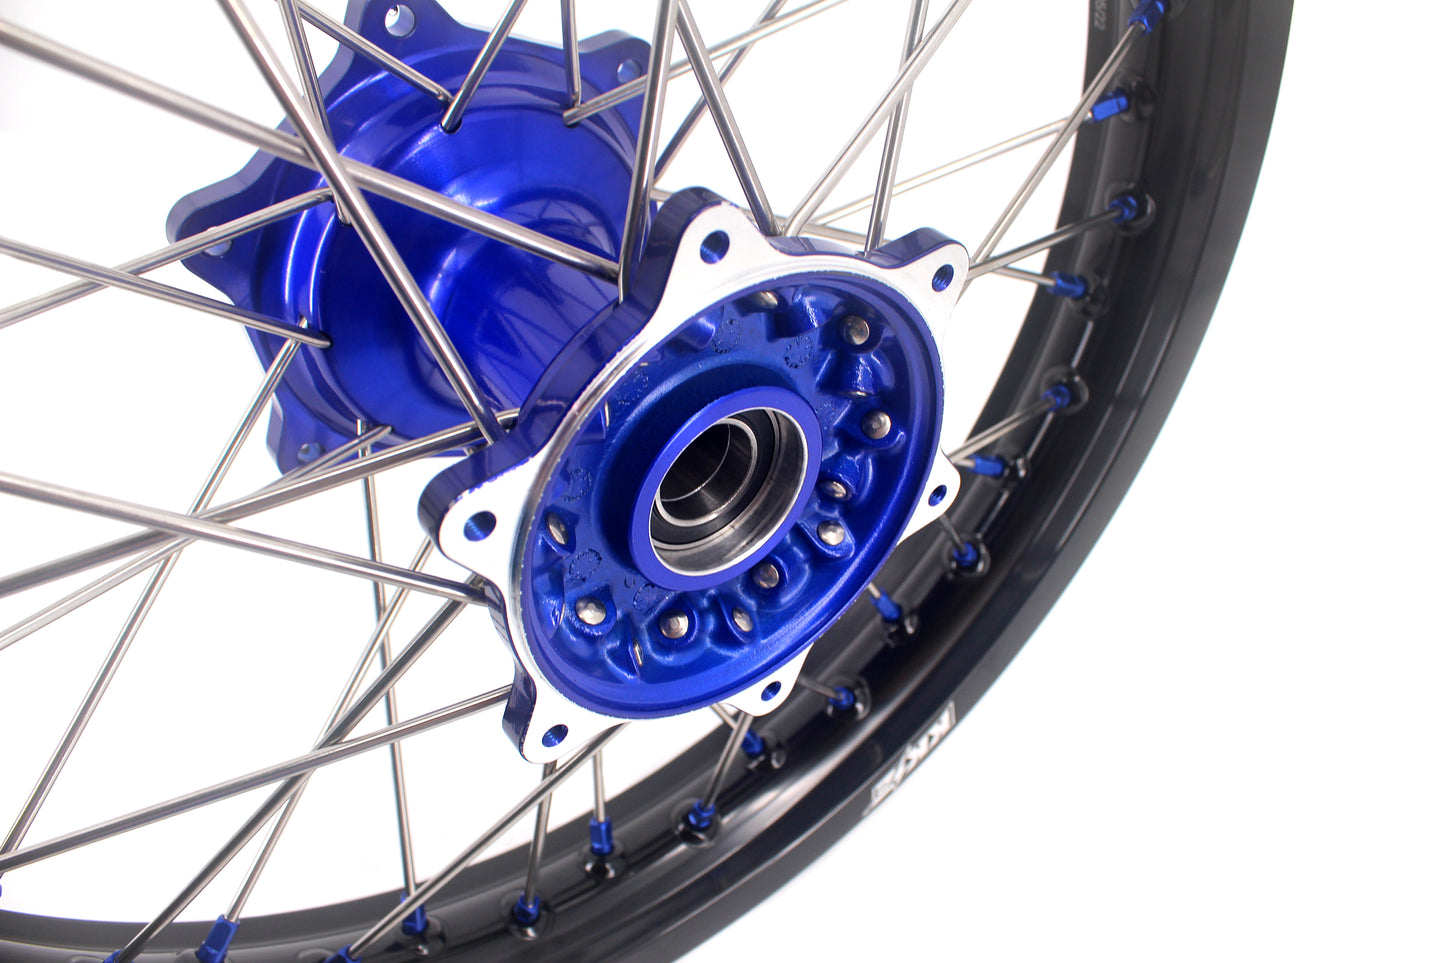 KKE 21" 19" Mx Dirtbike Casting Wheels For YAMAHA YZ125 YZ250 YZ250F YZ450F WR450F